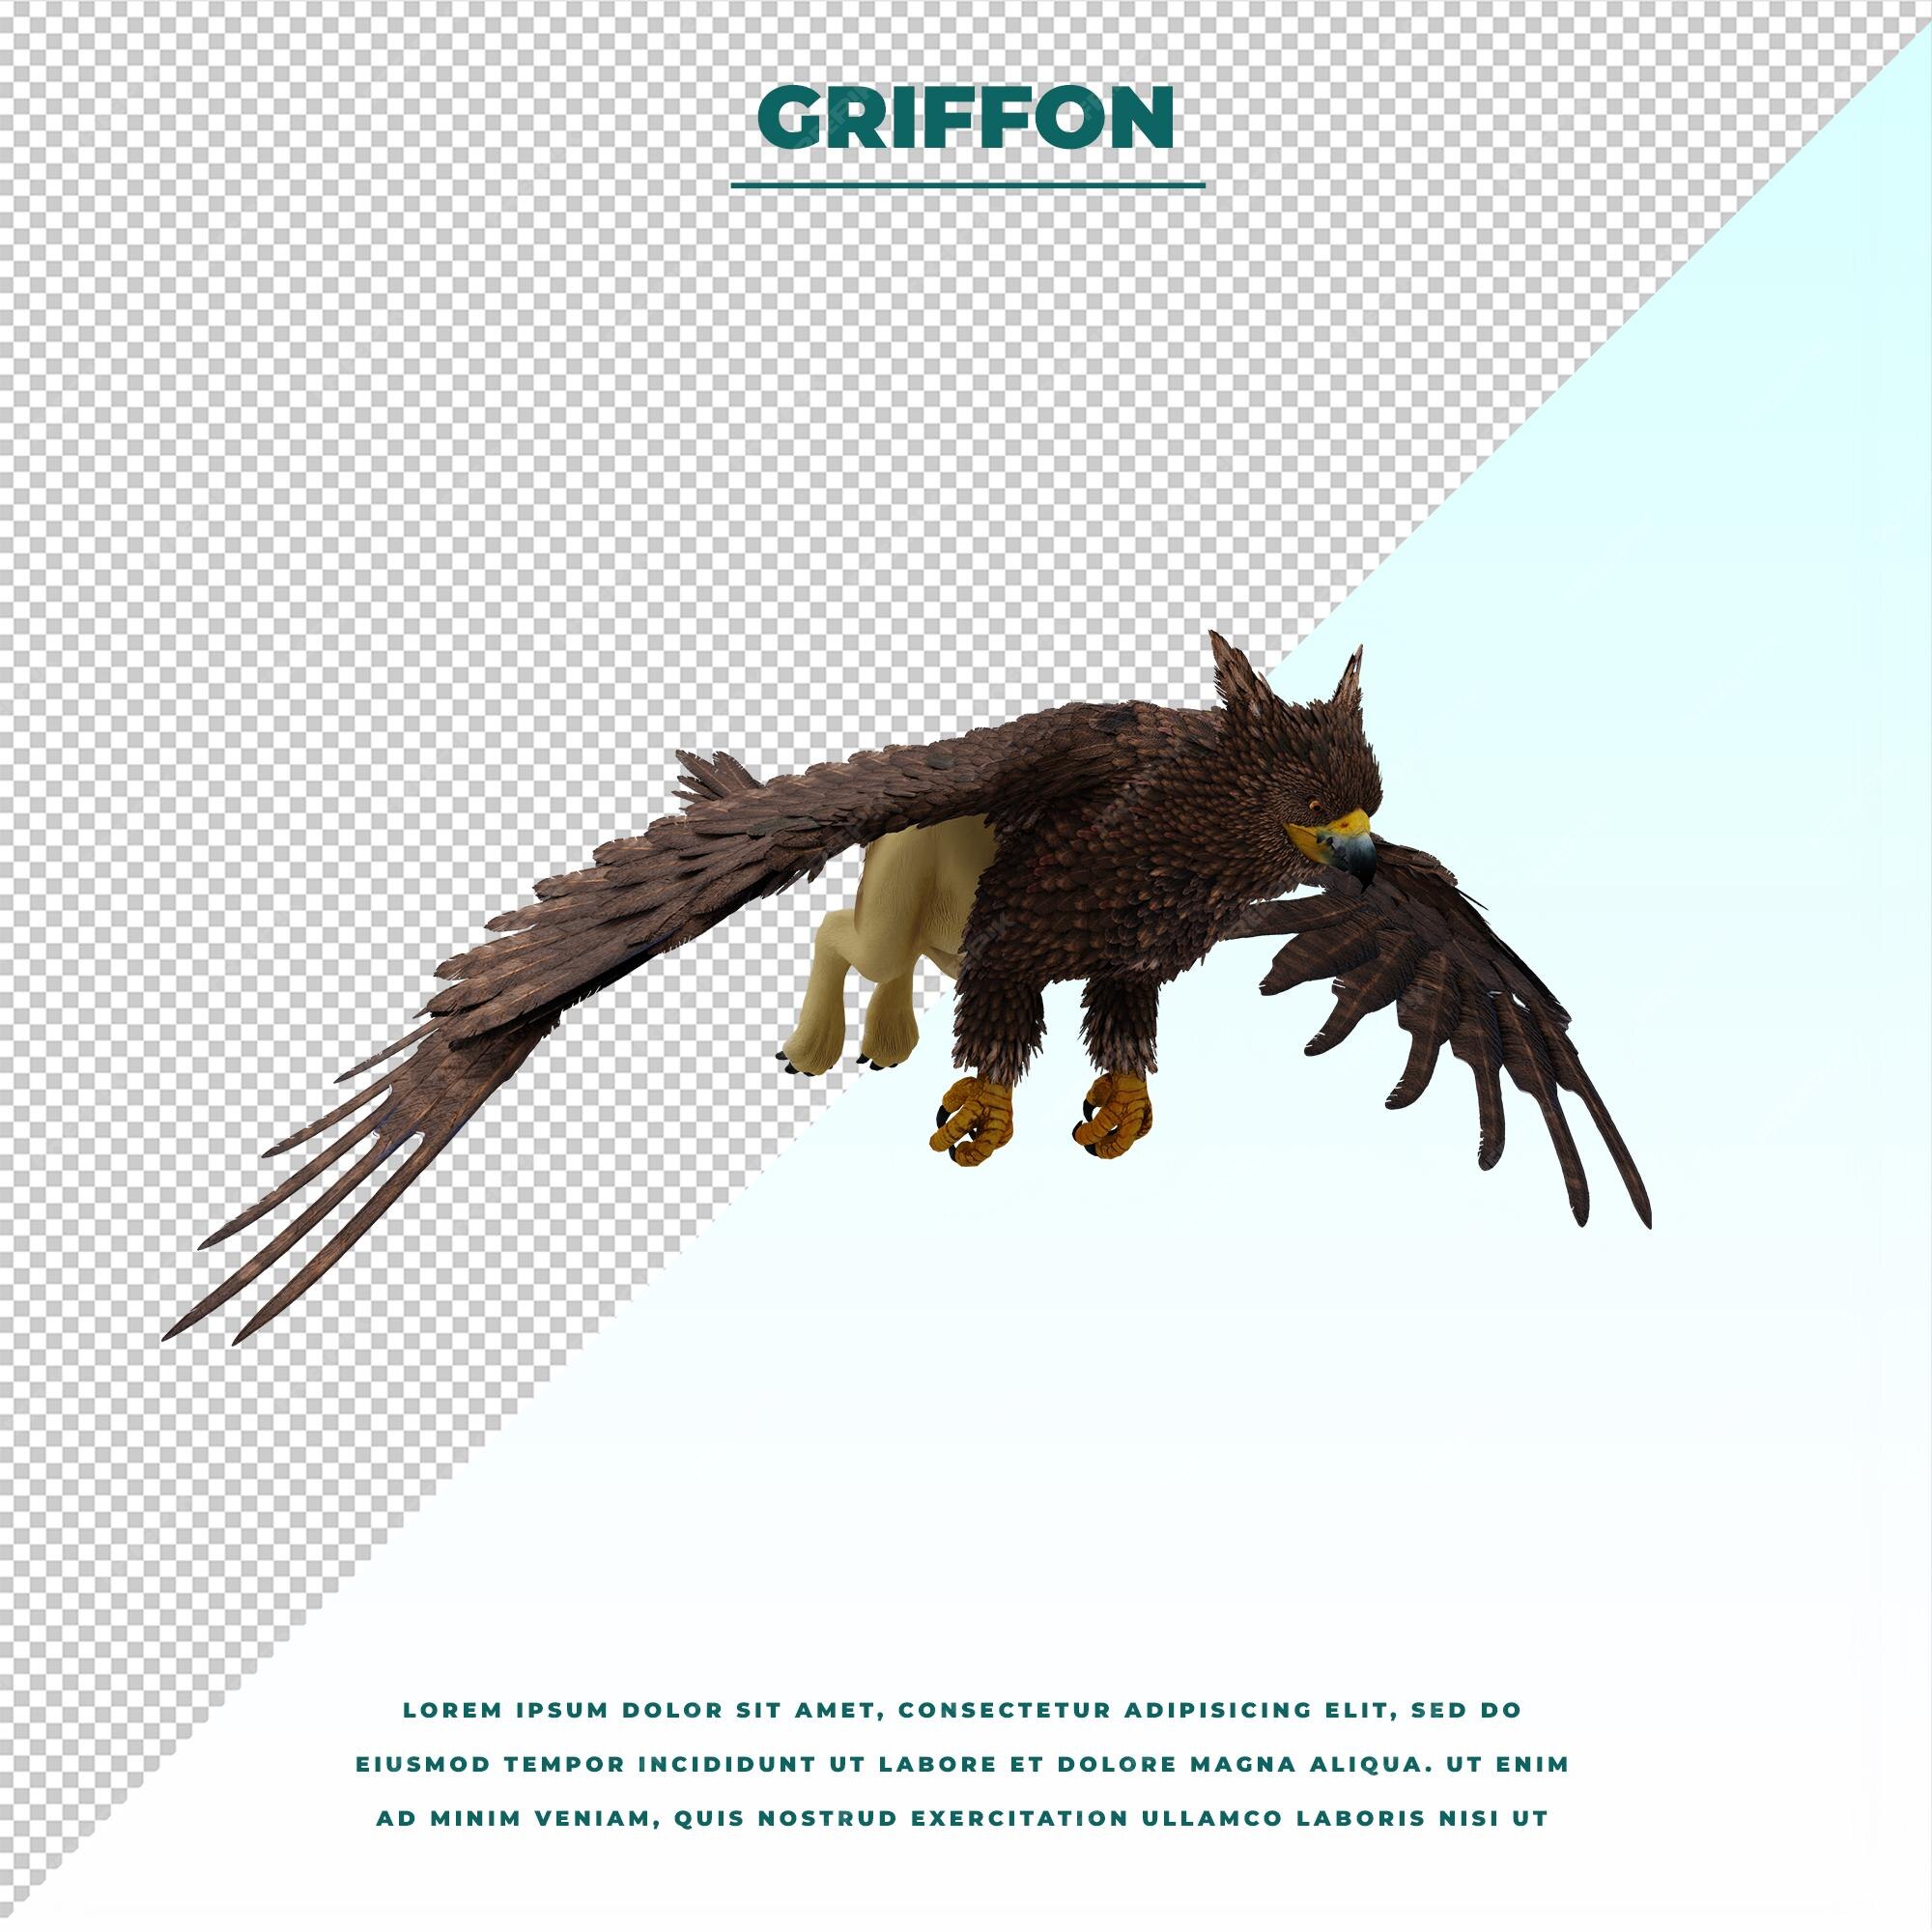 Griffin o grifo una criatura legendaria con el cuerpo de un león, la cabeza  y las alas de un águila | Archivo PSD Premium